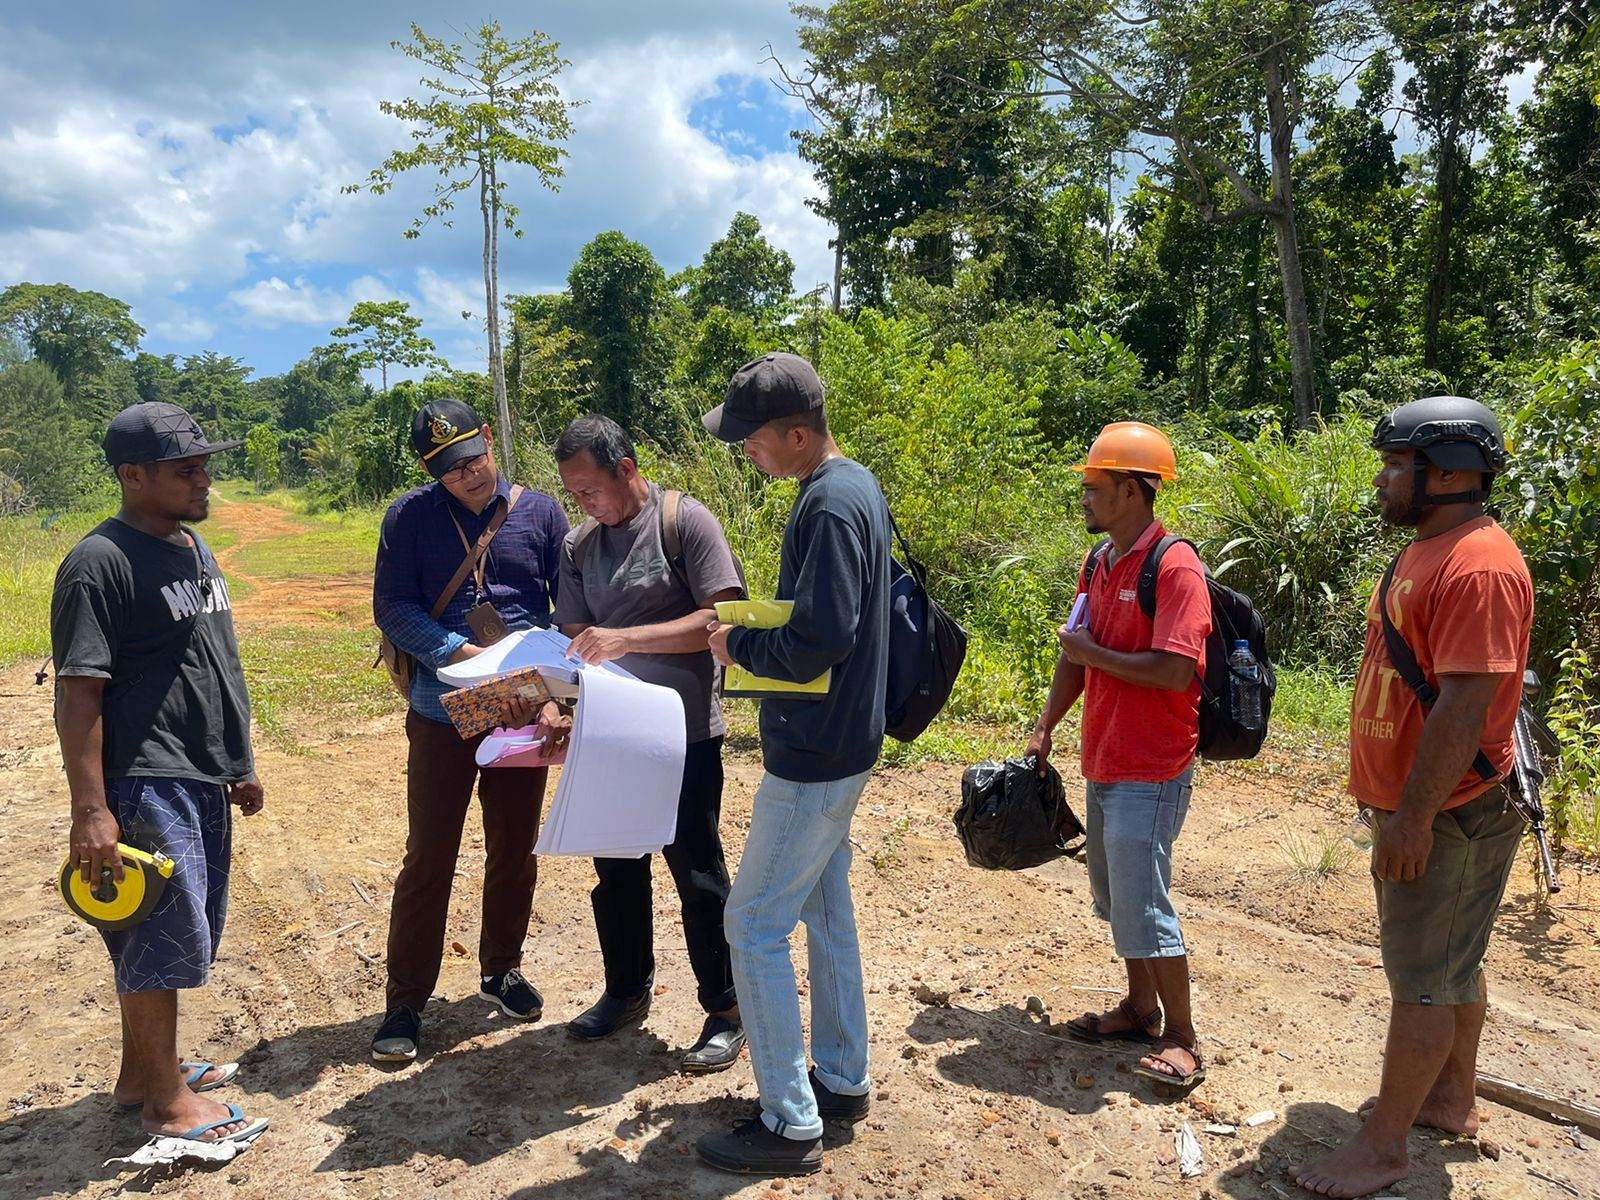 Foto: Tim Jaksa bersama tim Ahli yang didatangkan dari Politeknik Negeri Ambon saat meninjau lokasi pengerjaan jalan - Jubi TV/Adlu Raharusun